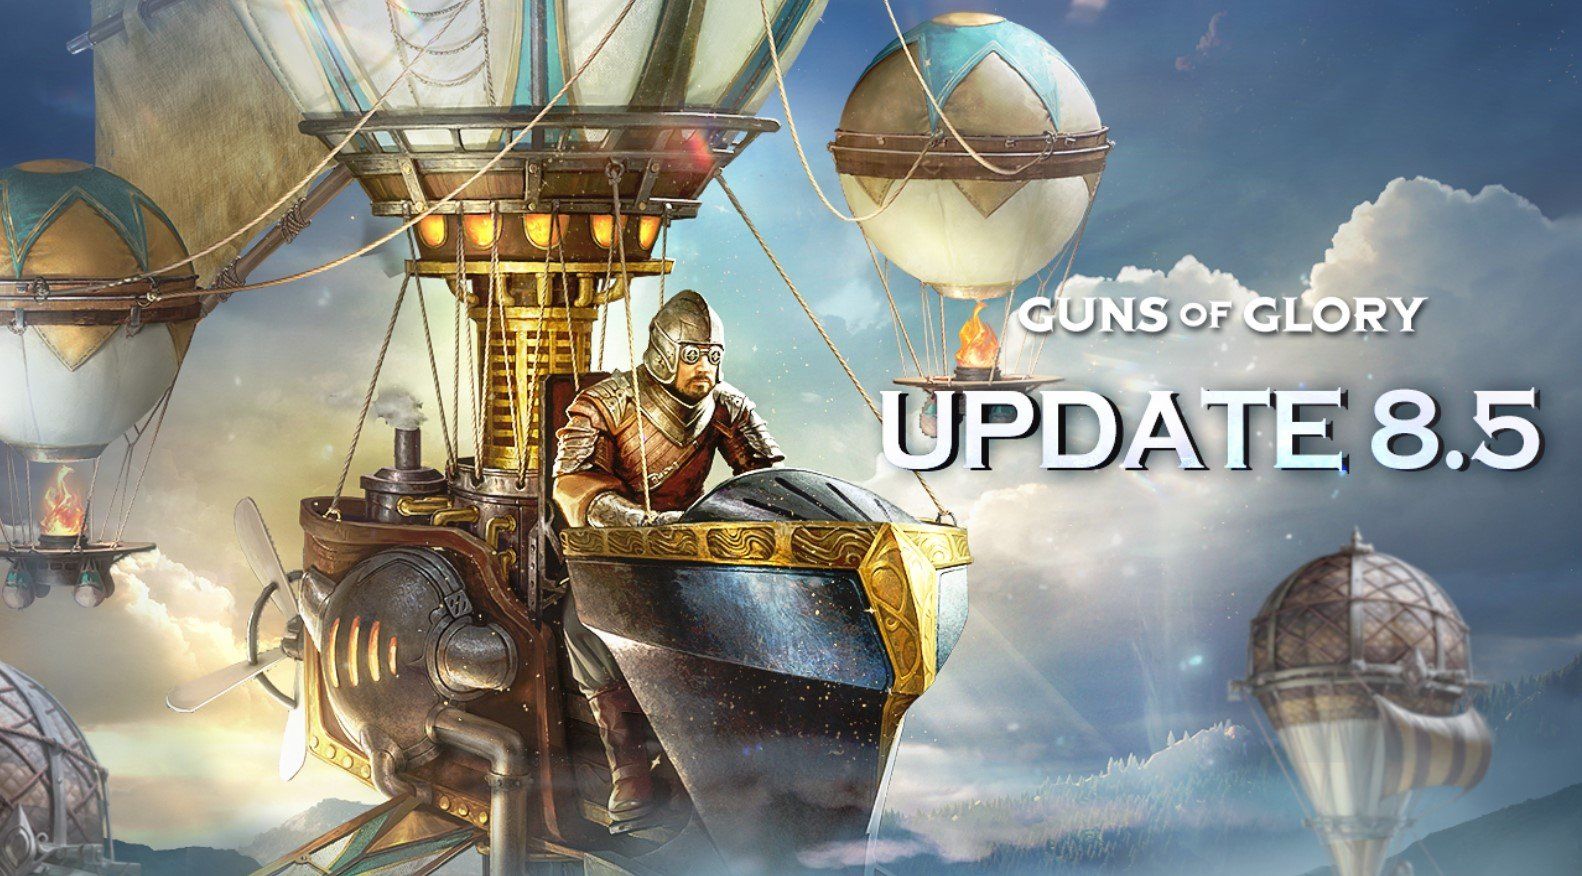 Guns of Glory Update 8.5 bietet neue Eroberungen, Söldner, Siedlungserweiterungen und verschiedene Optimierungen